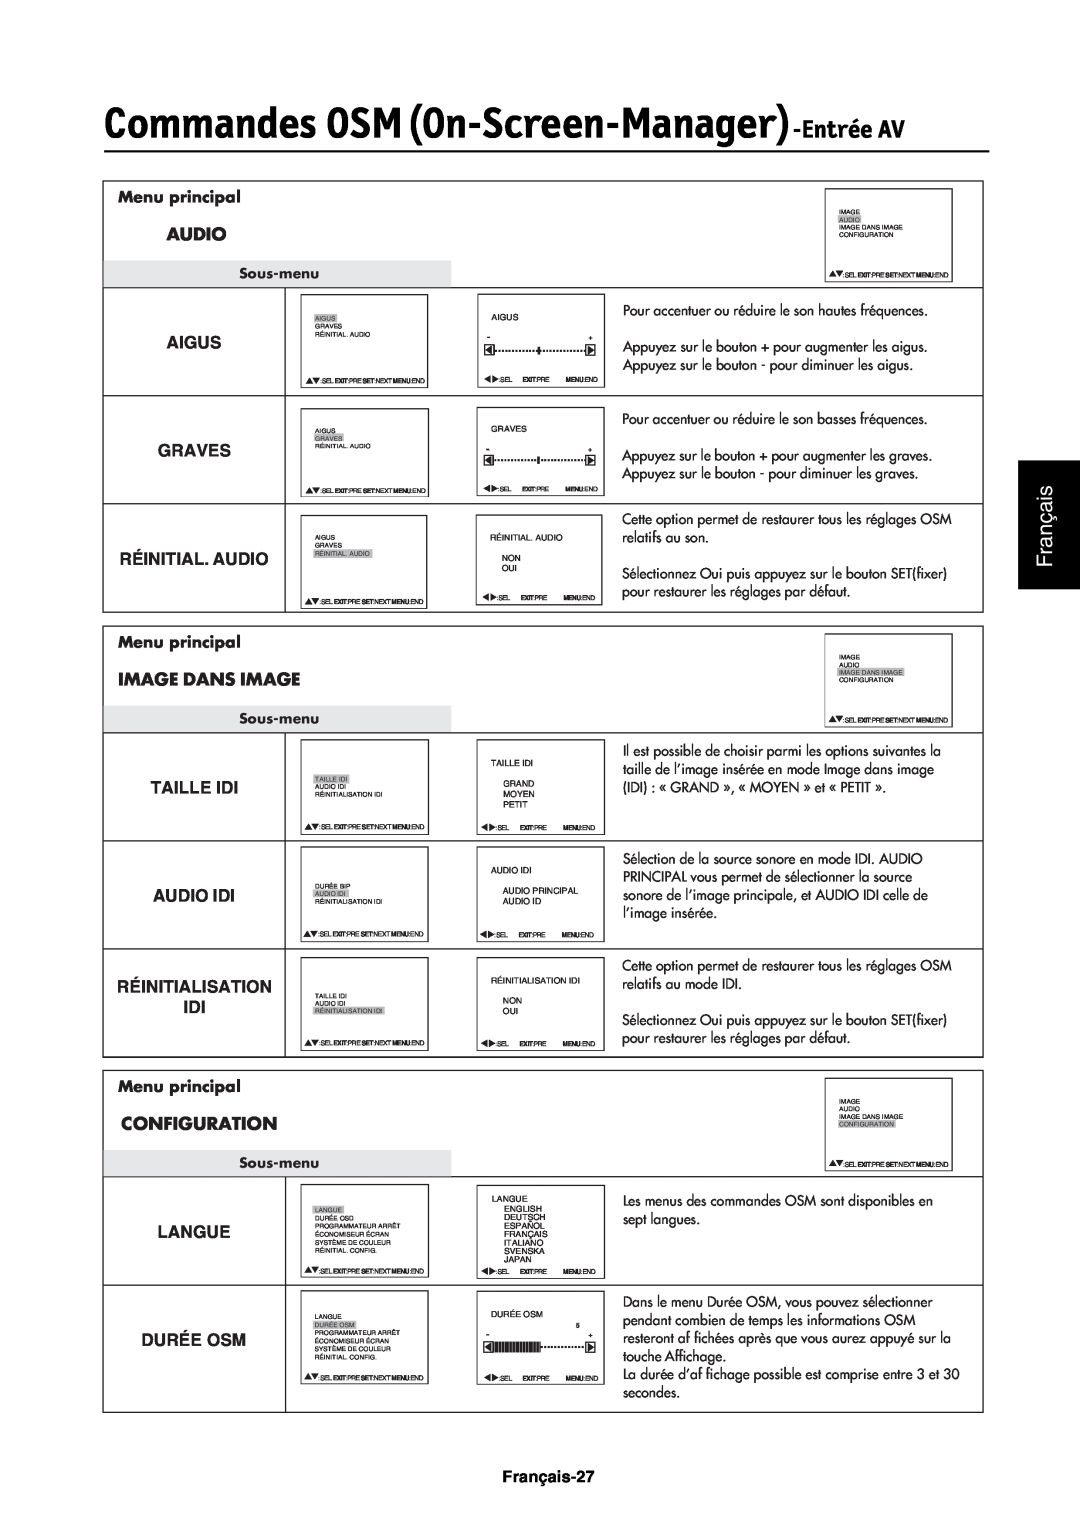 NEC LCD4000e manual Commandes OSMOn-Screen-Manager-EntréeAV, Français, Audio, Image Dans Image, Configuration, Taille Idi 